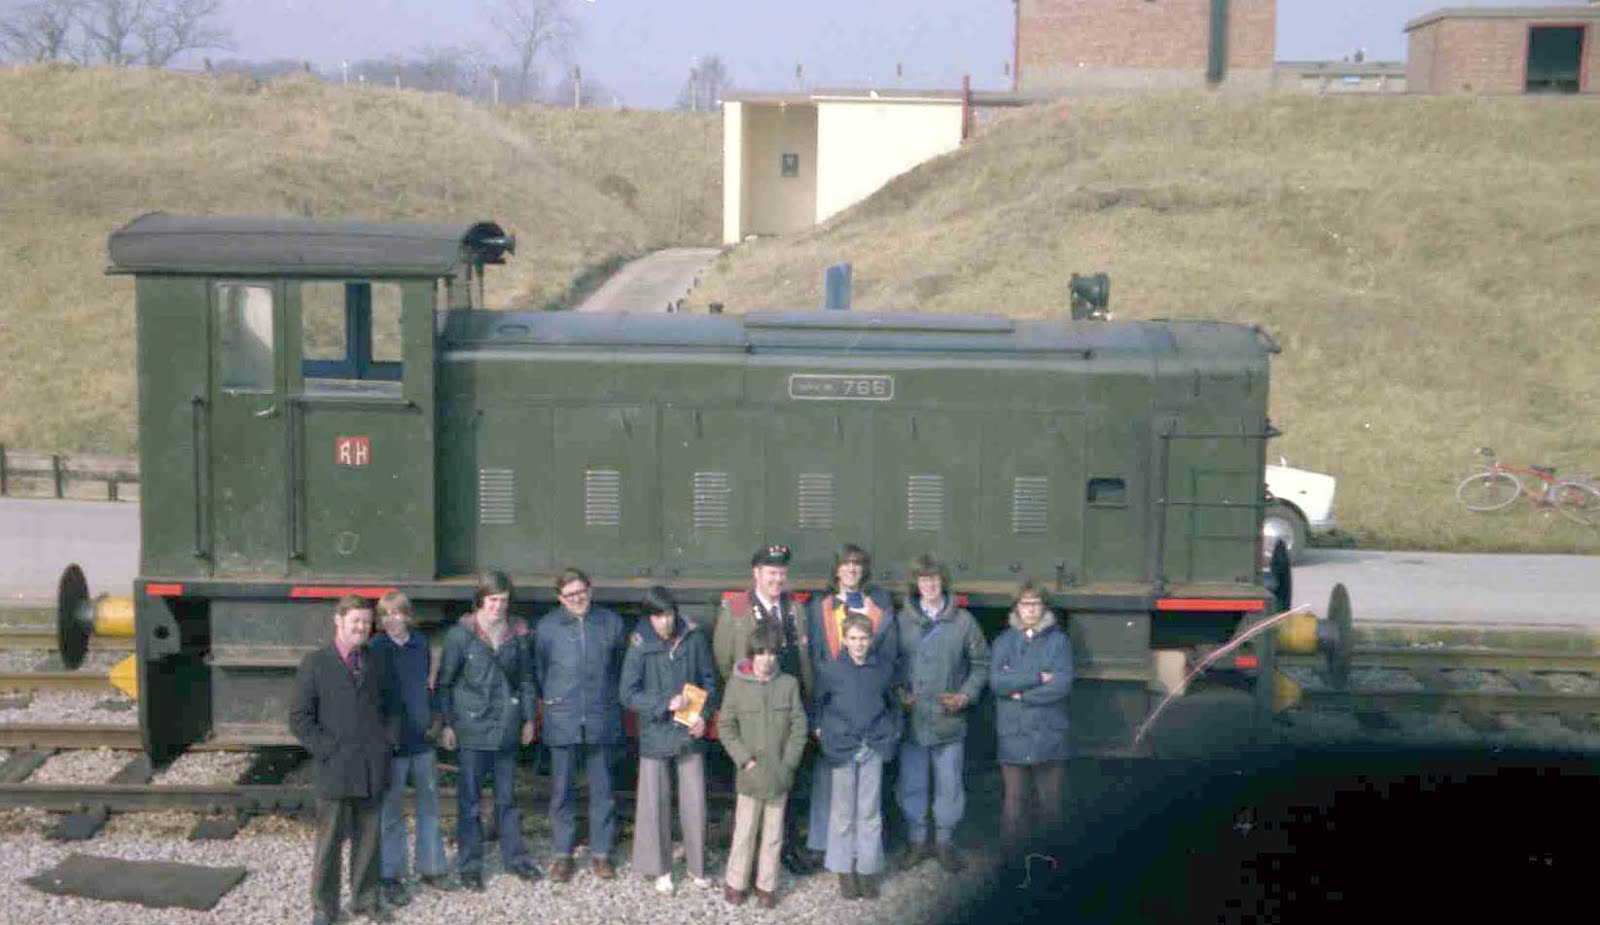 Bedenham Railway Staff